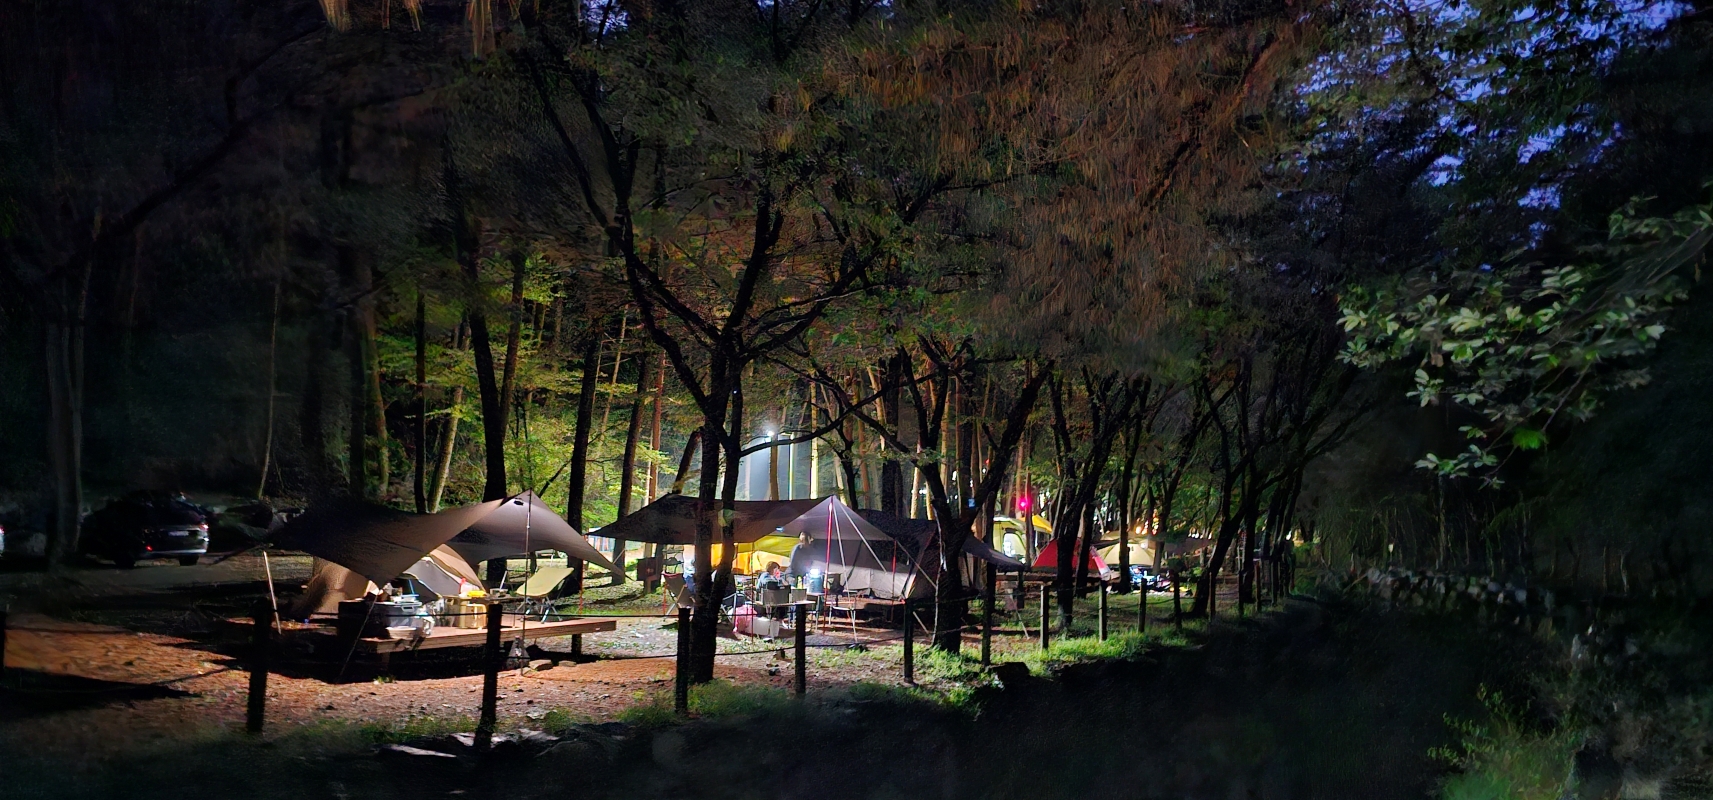 캠핑의 계절, 텐트 밖은 온통 숲! 이미지1